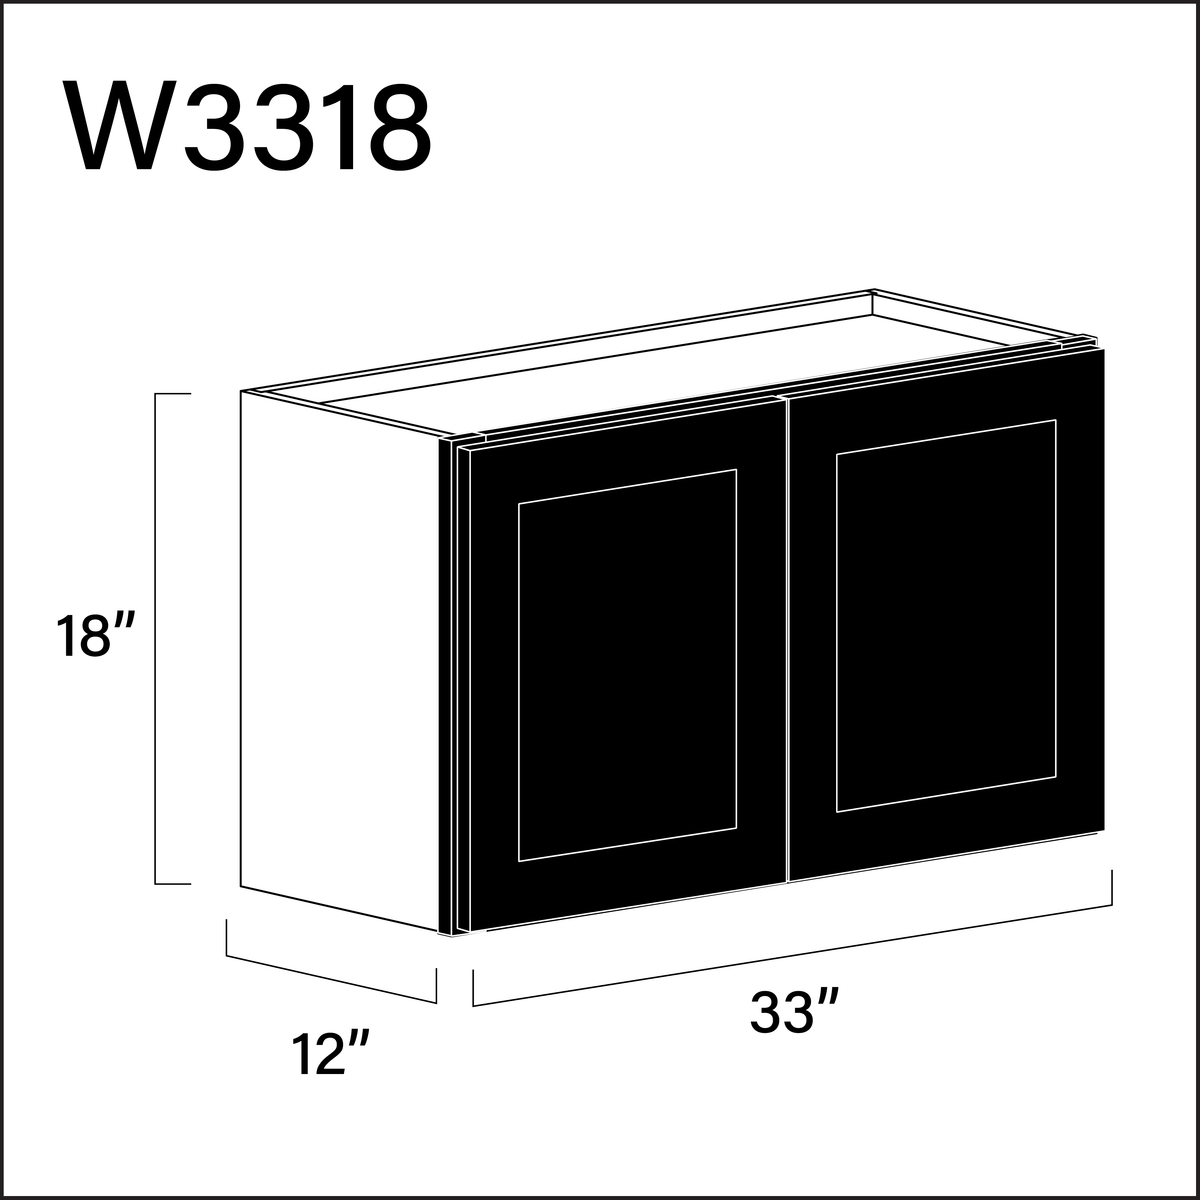 Black Shaker Double Door Wall Cabinet - 33" W x 18" H x 12" D